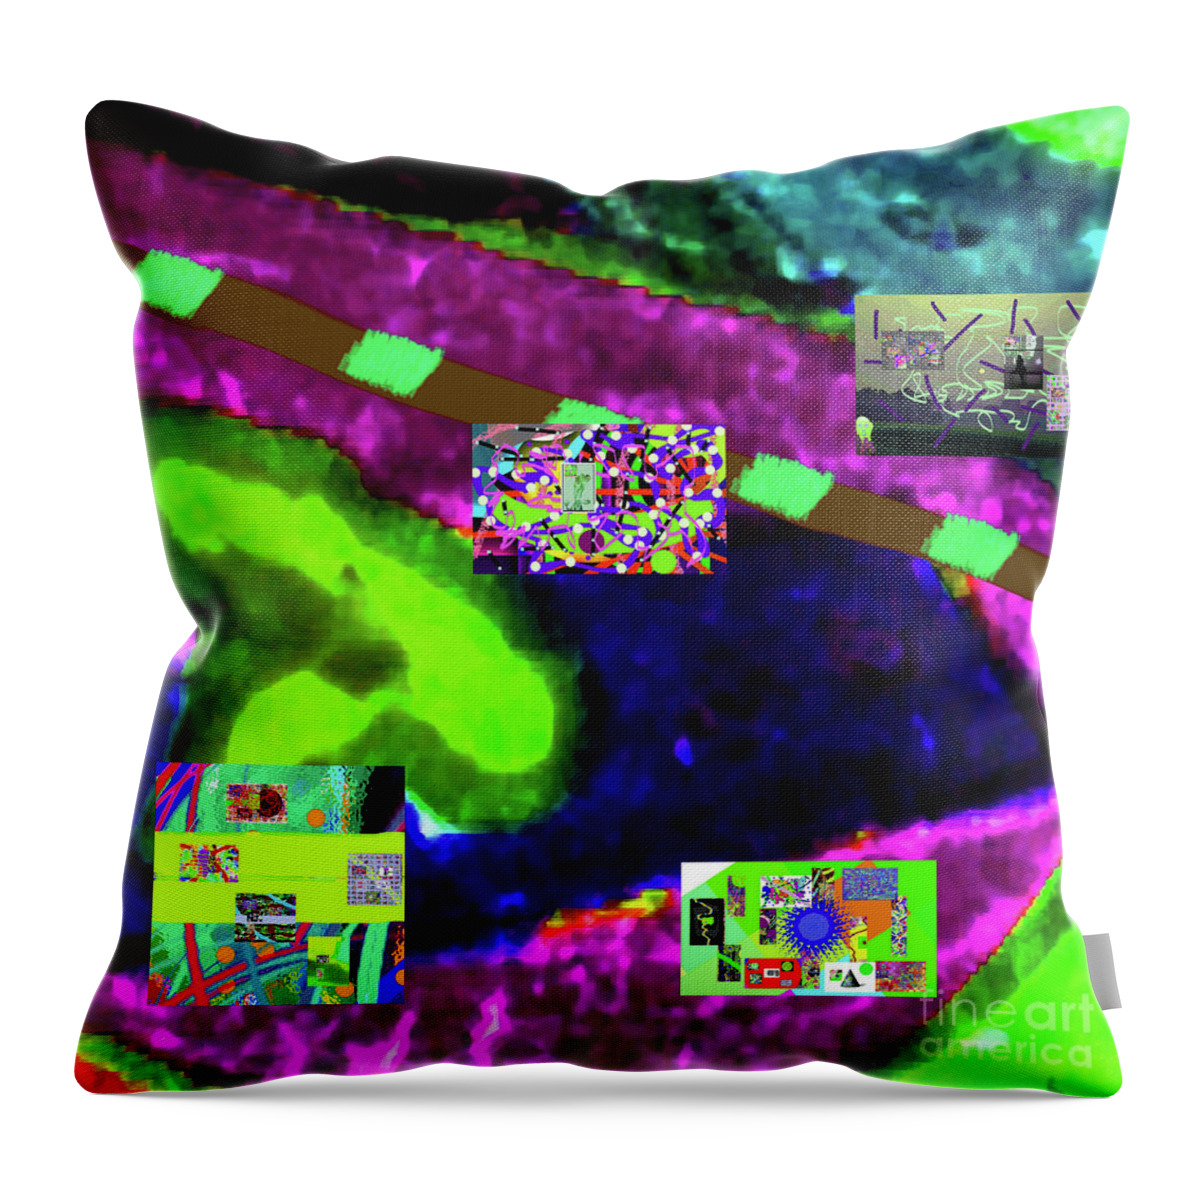 Walter Paul Bebirian Throw Pillow featuring the digital art 7-1-2015eabcdefghijklmnopqrtuvw by Walter Paul Bebirian